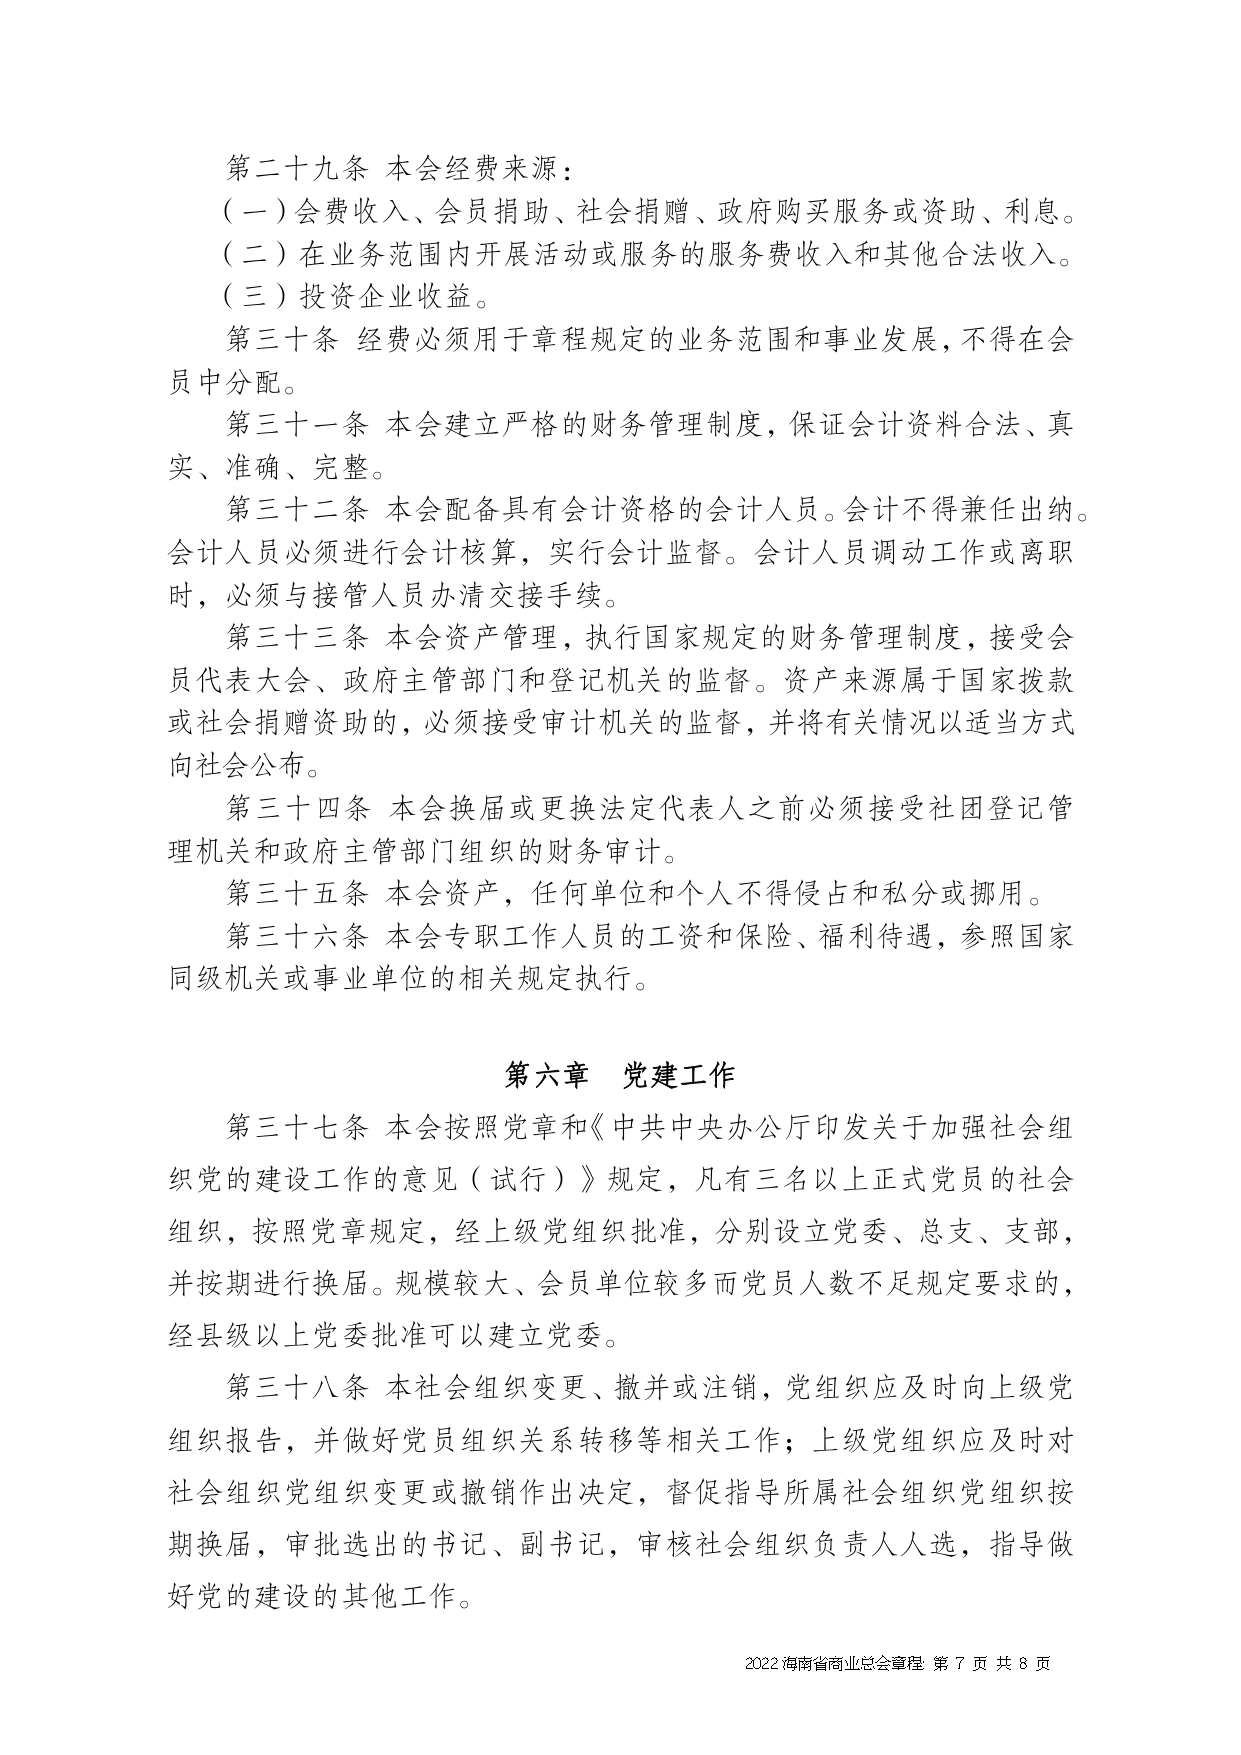 2022+海南省商业总会章程（修正版）-1_page-0007.jpg